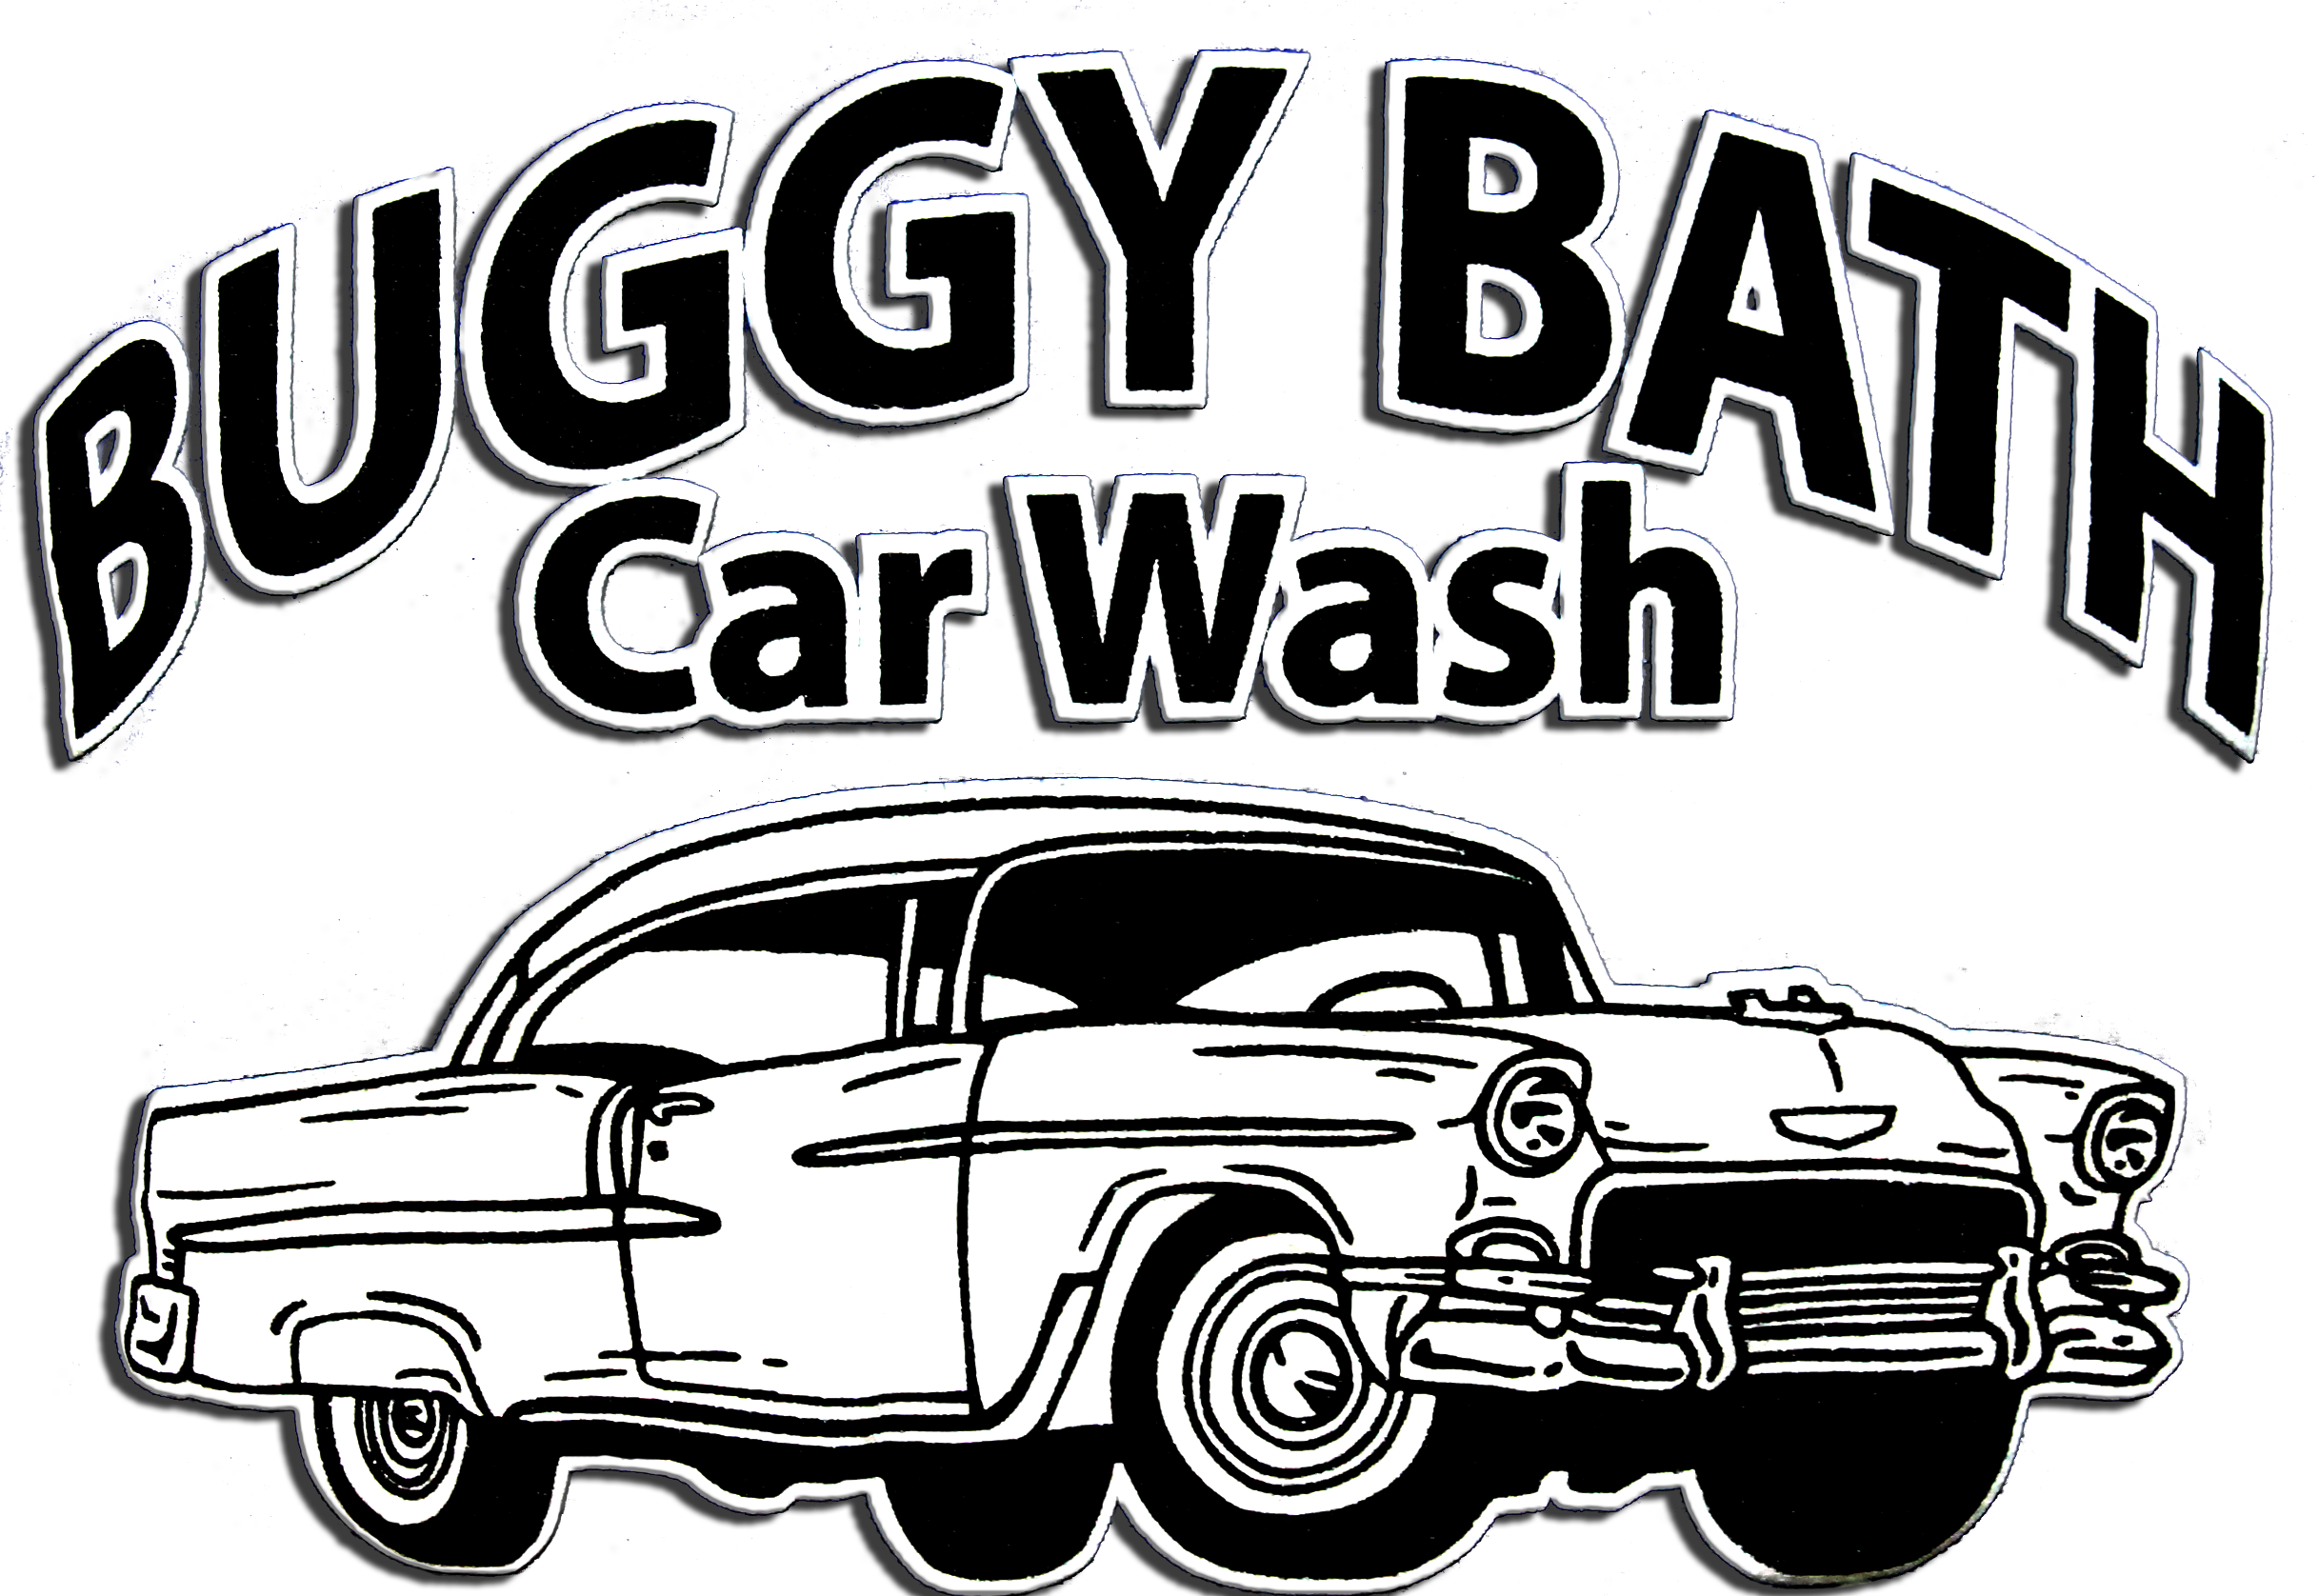 Buggy Bath Car Wash Vintage Sign PNG